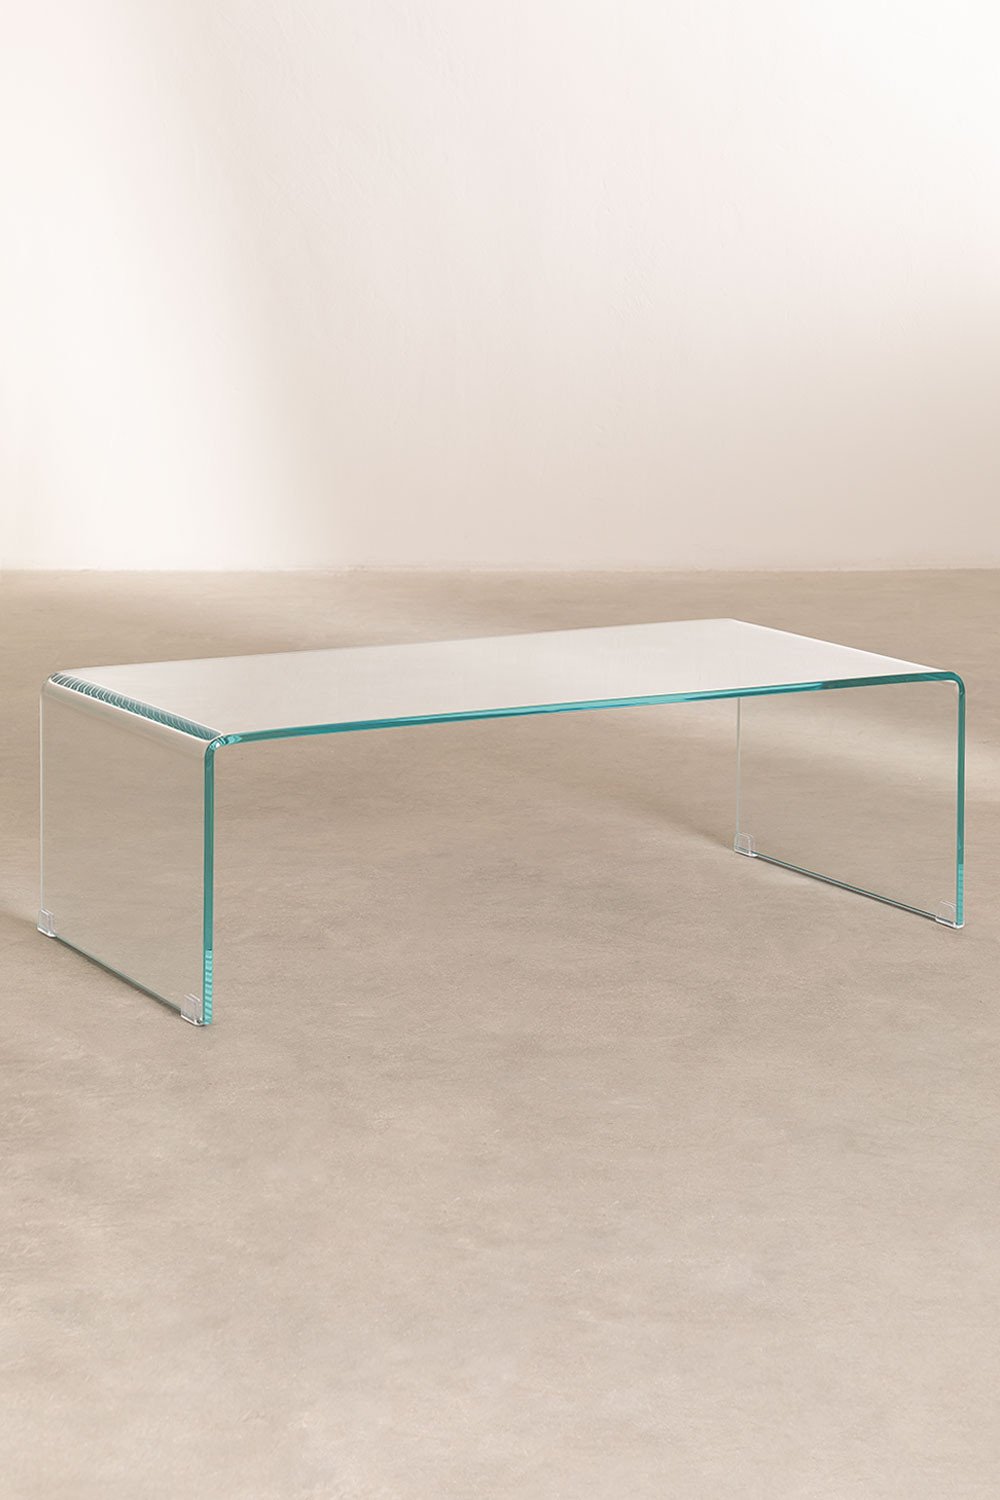 Table basse en verre transparent (110x55 cm) Crhis, image de la galerie 2